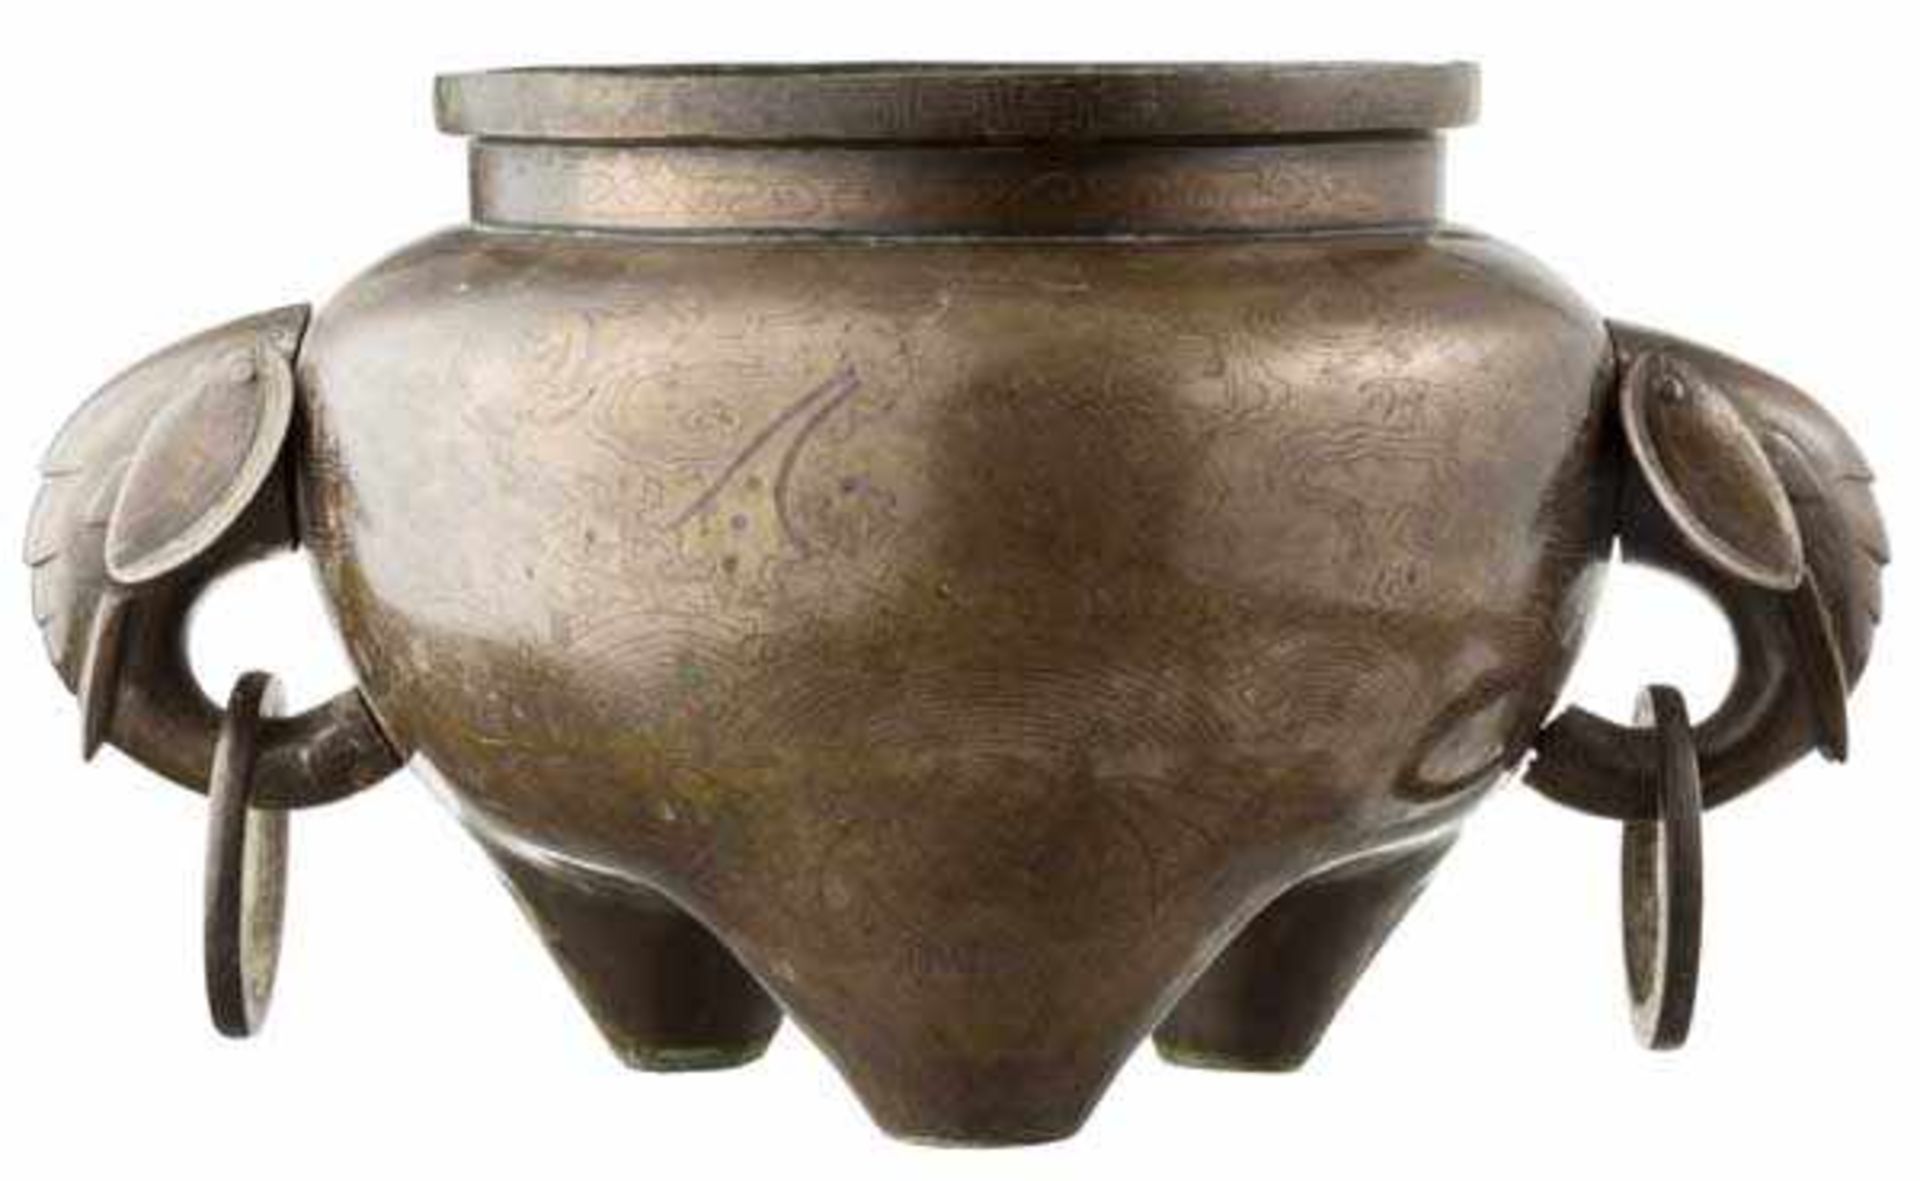 Bronzegefäß mit Silbereinlagen, China, 19. Jhdt. Bauchiges Gefäß auf drei kurzen Standbeinen. - Bild 5 aus 9